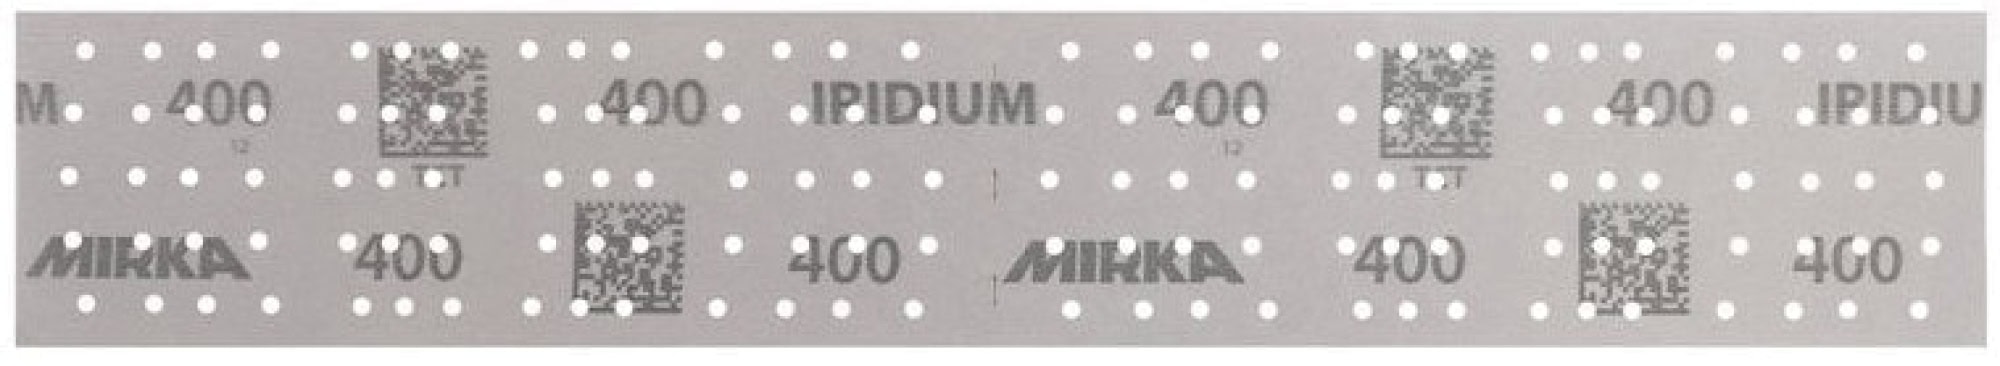 Mirka® Iridium® 246B205018, 70 mm x 400 mm, 2 mal in 70 x 198 mm Stücke perforiert, P180, Multilochung, Kletthaftend, Schleifstreifen mit Keramik- und Aluminiumkorn